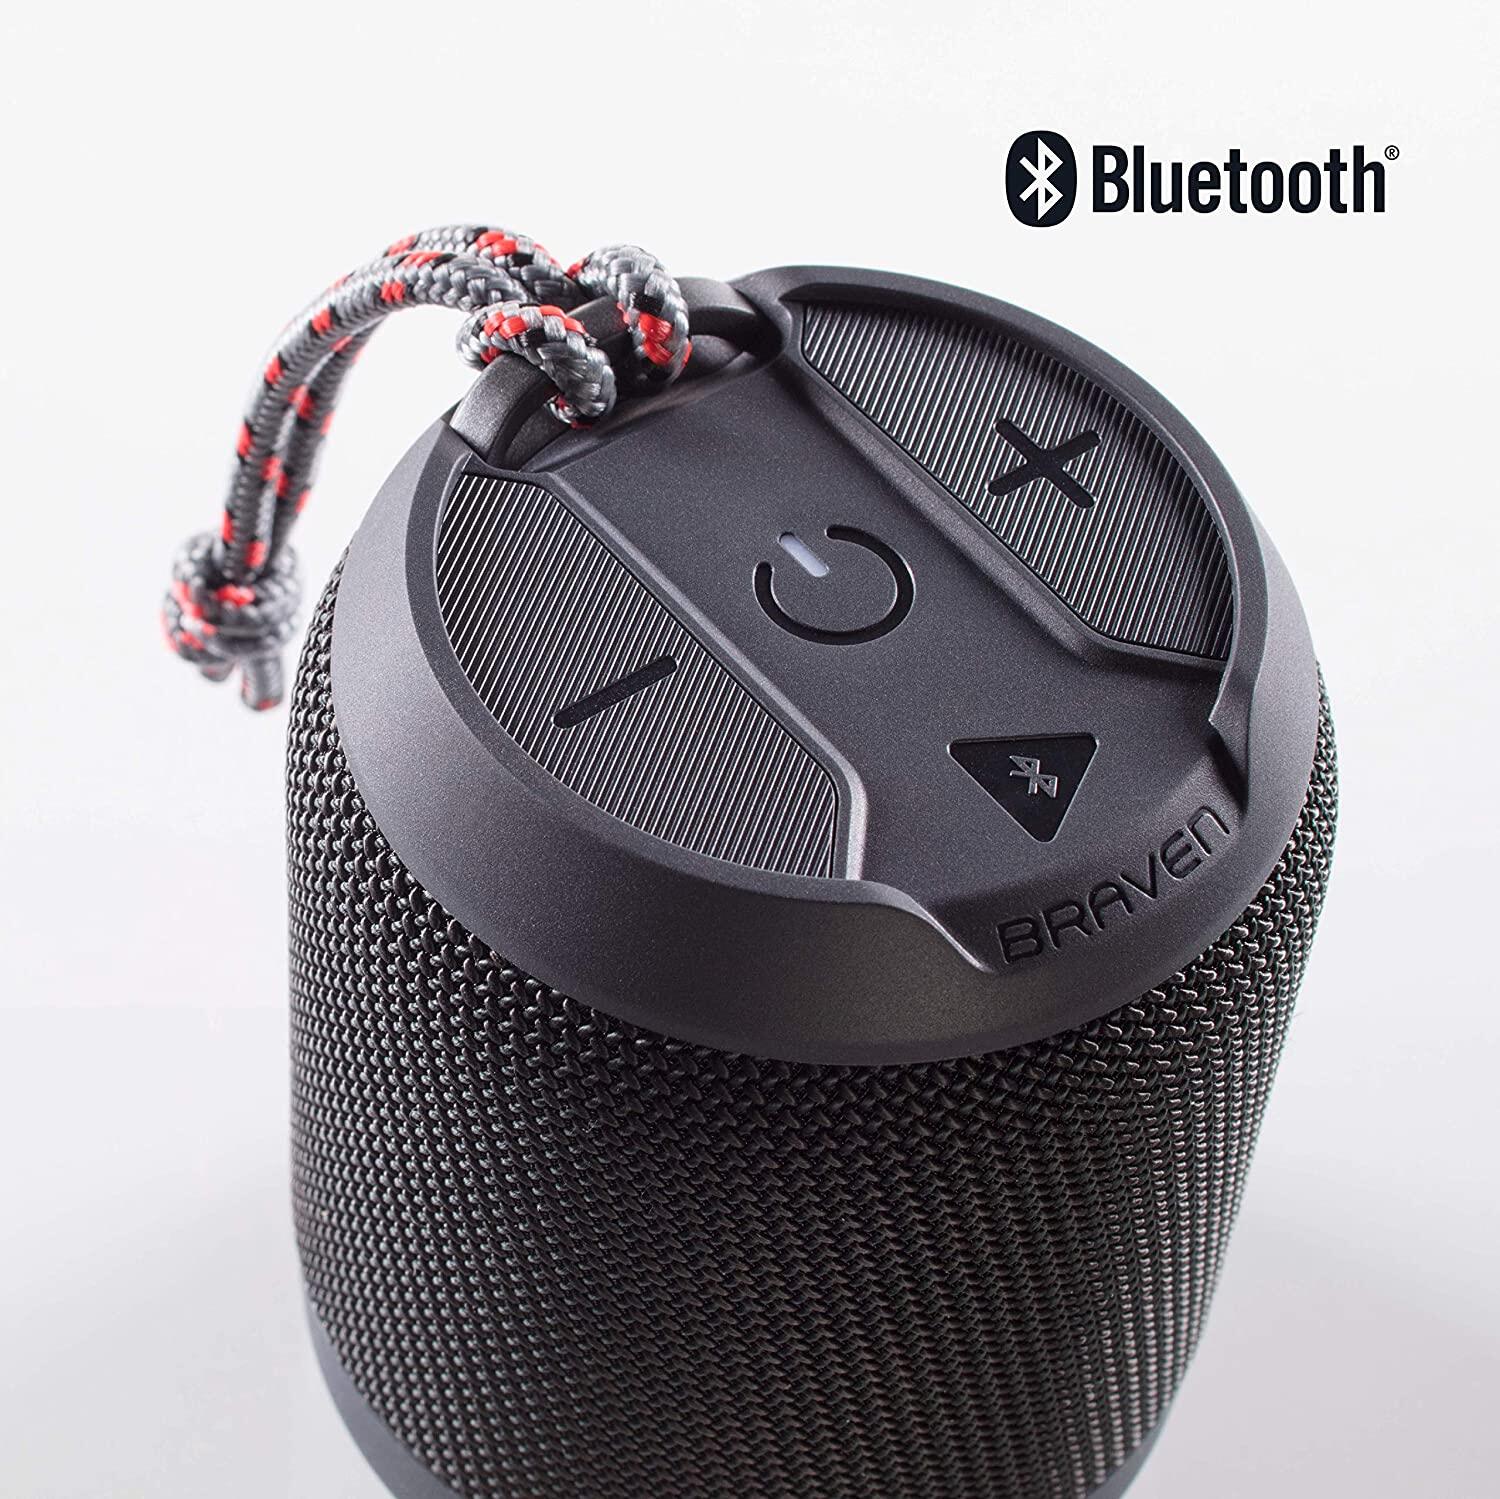 BRAVEN WIreless Speaker BRV Mini - Black/Blue/Grey/Red